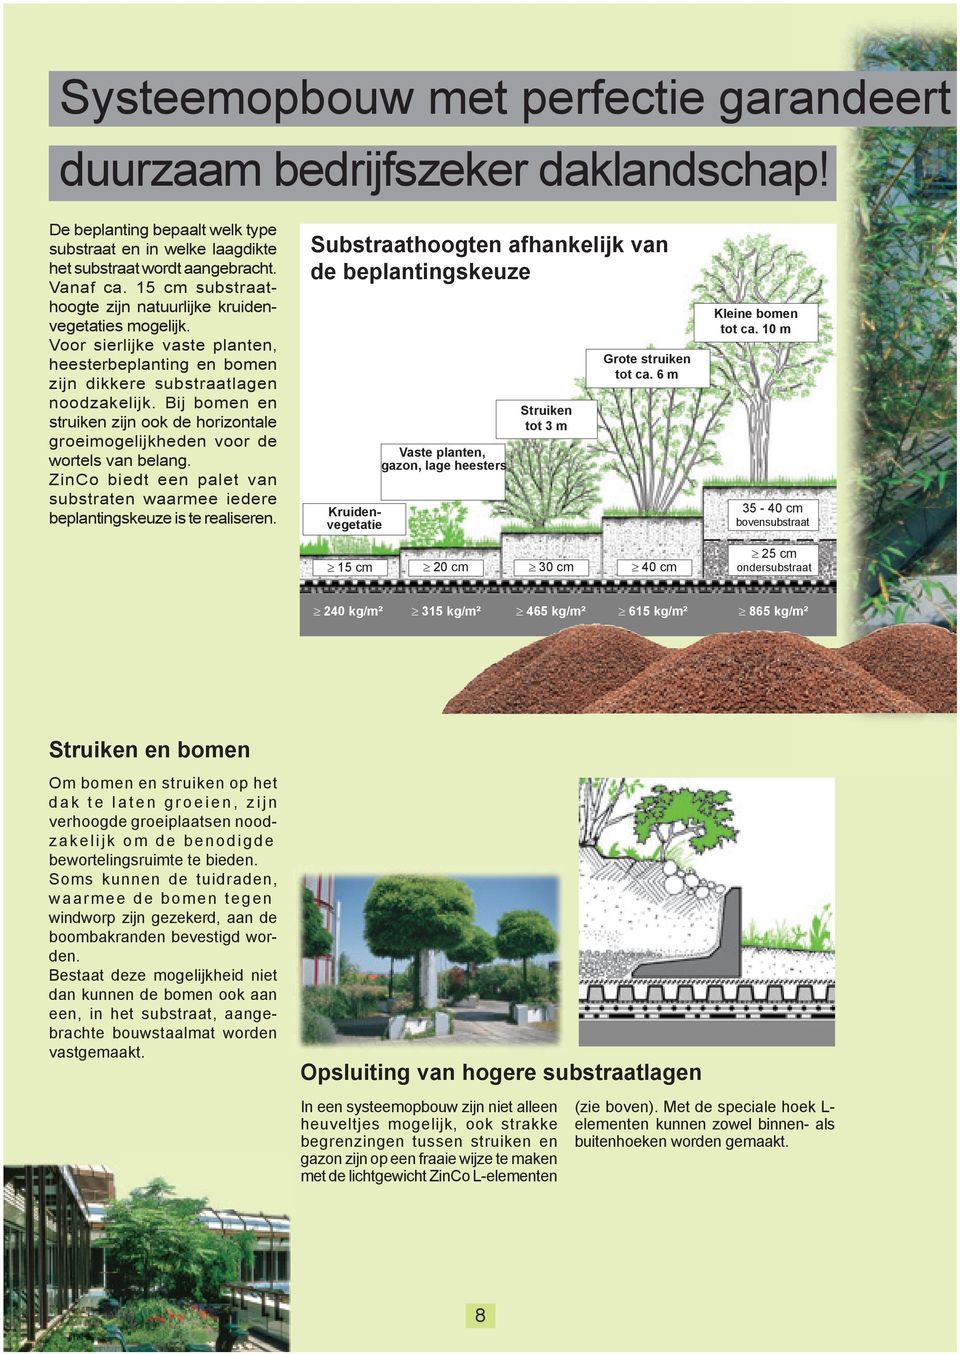 Bij bomen en struiken zijn ook de horizontale groeimogelijkheden voor de wortels van belang. ZinCo biedt een palet van substraten waarmee iedere beplantingskeuze is te realiseren.